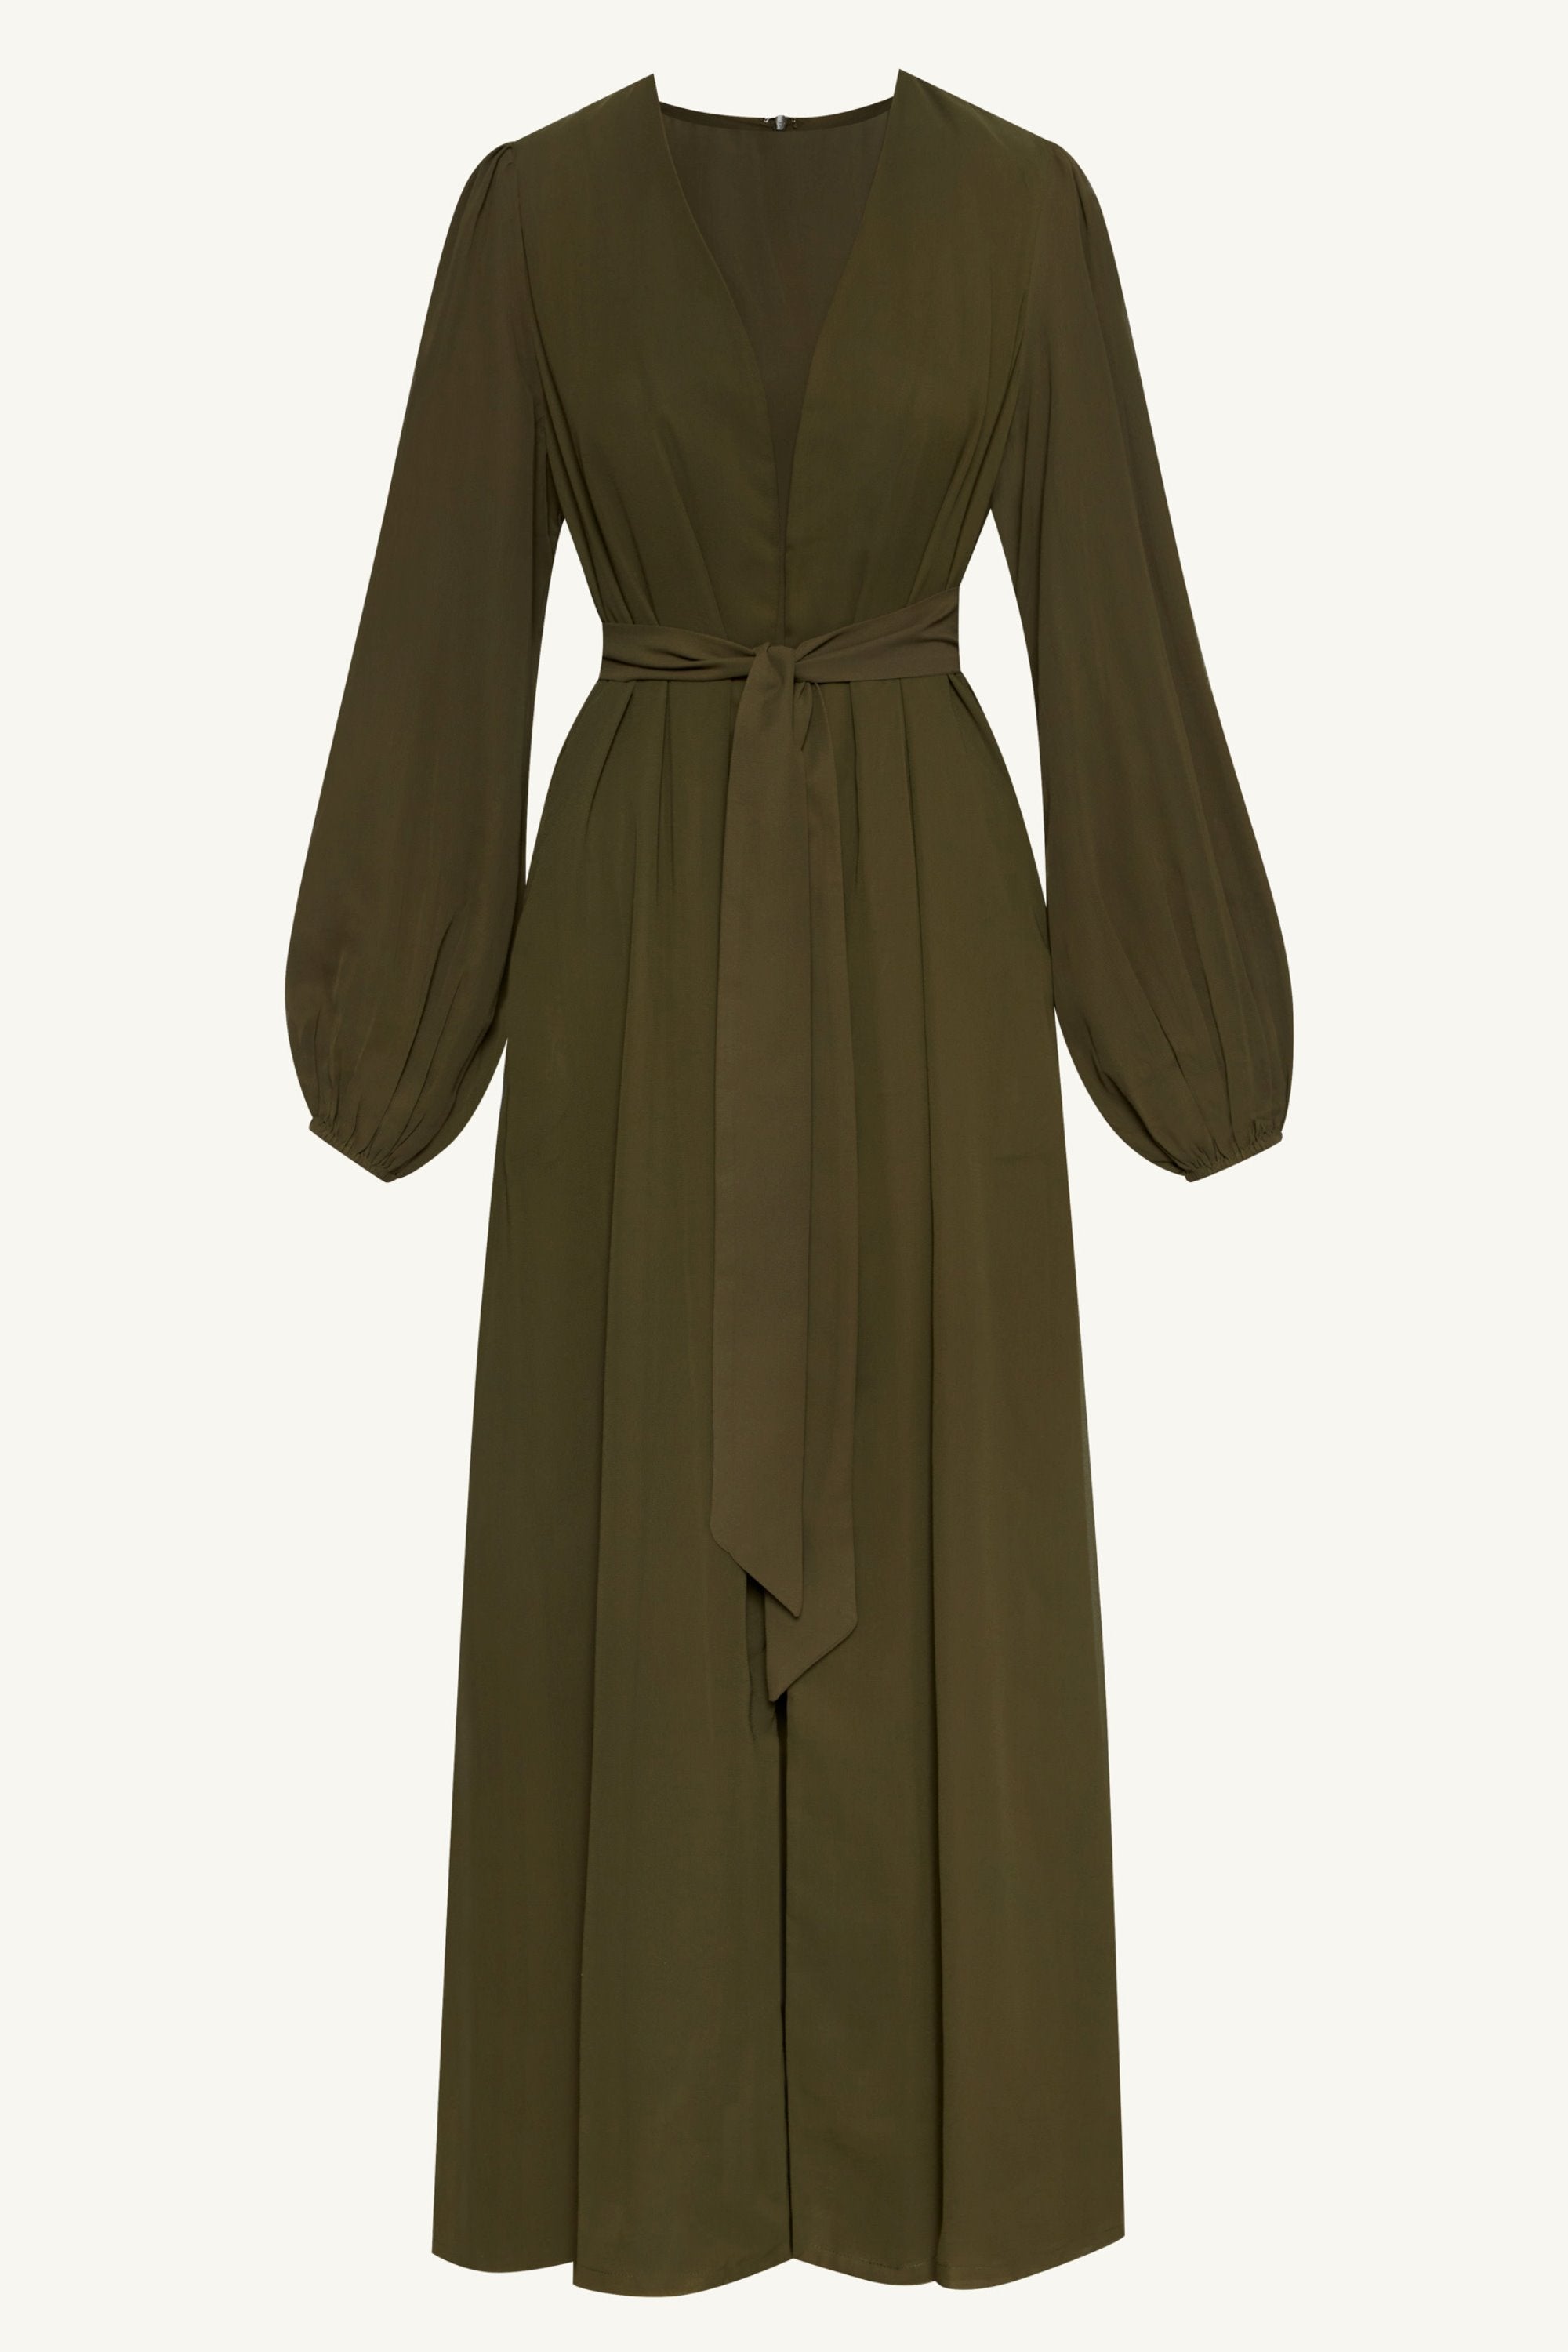 Najma Chiffon Abaya & Dress Set - Olive Clothing epschoolboard 